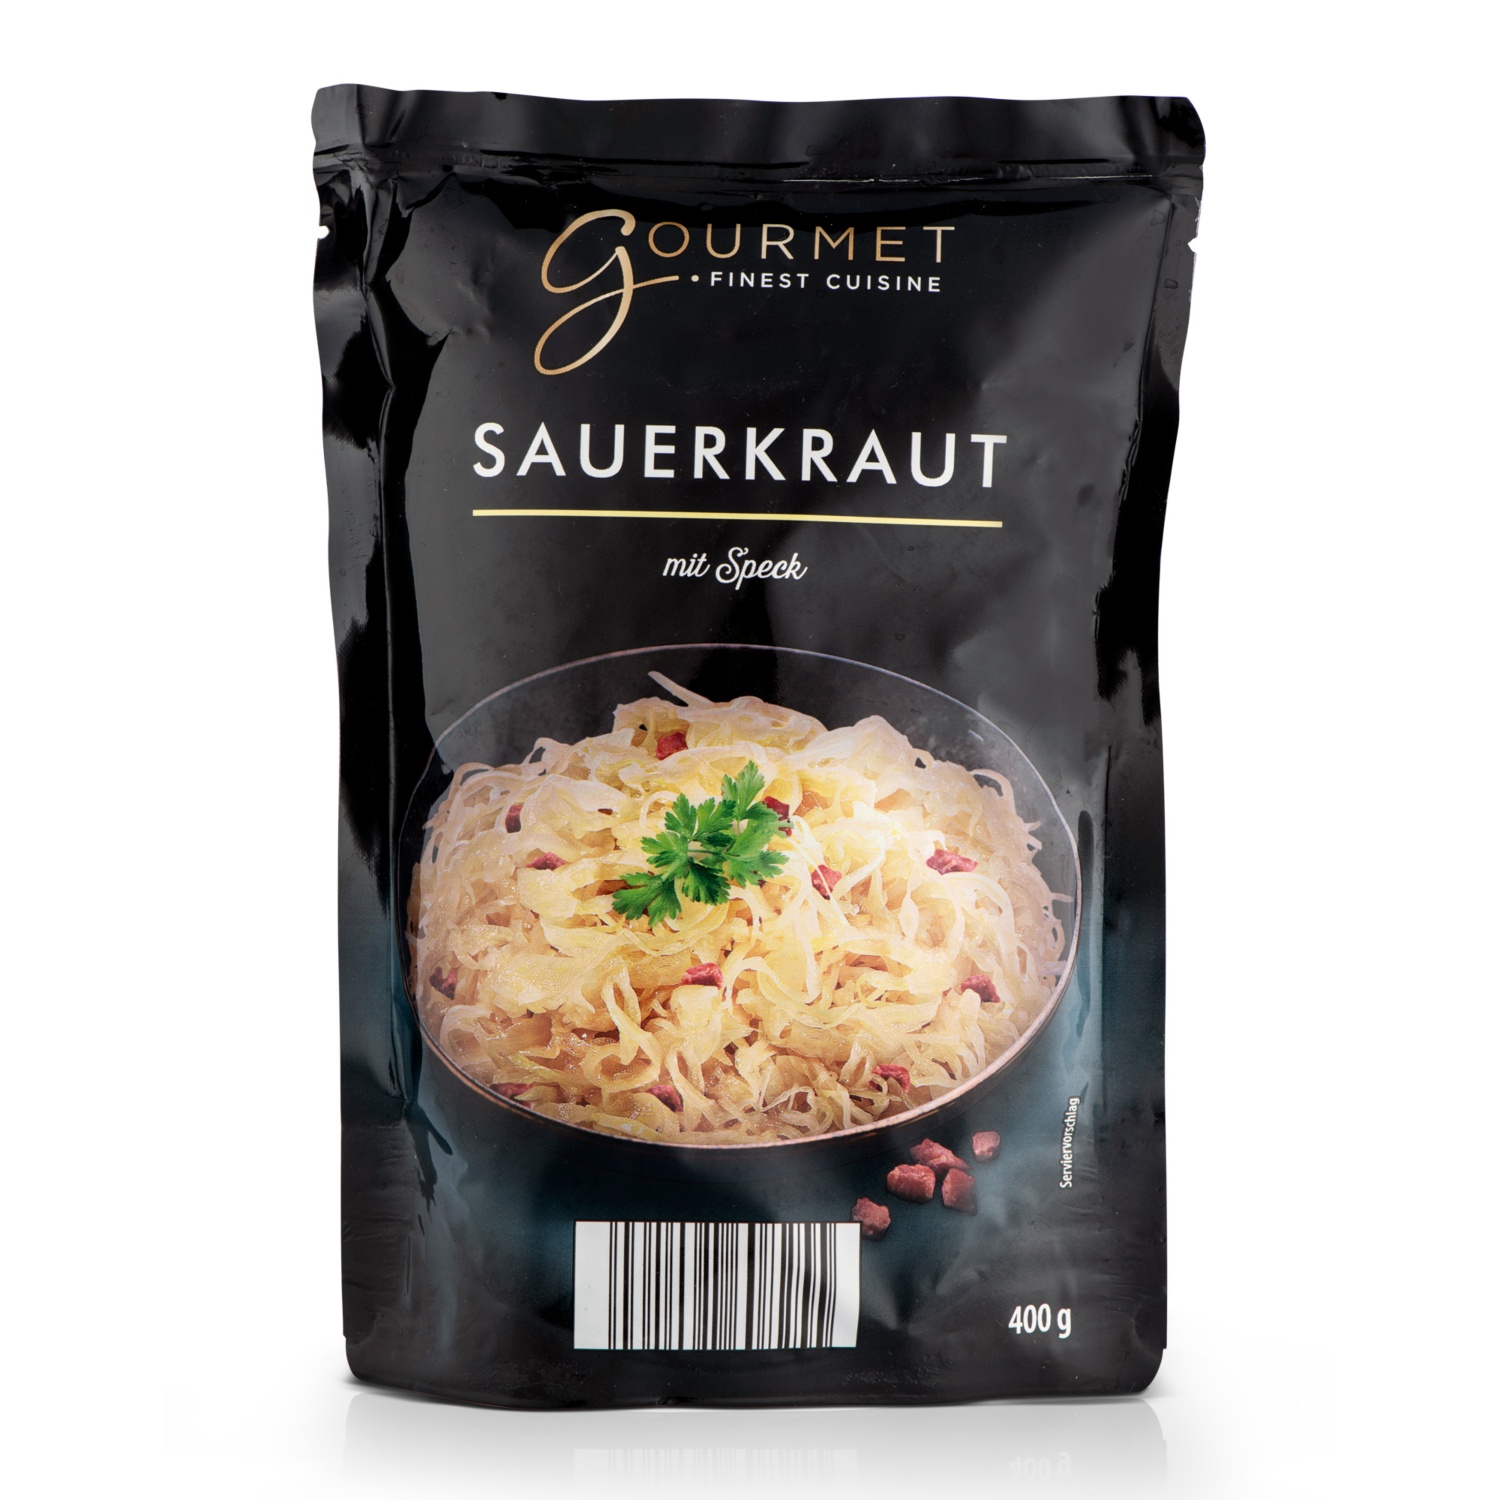 GOURMET Krautspezialitäten, Sauerkraut mit Speck verfeinert